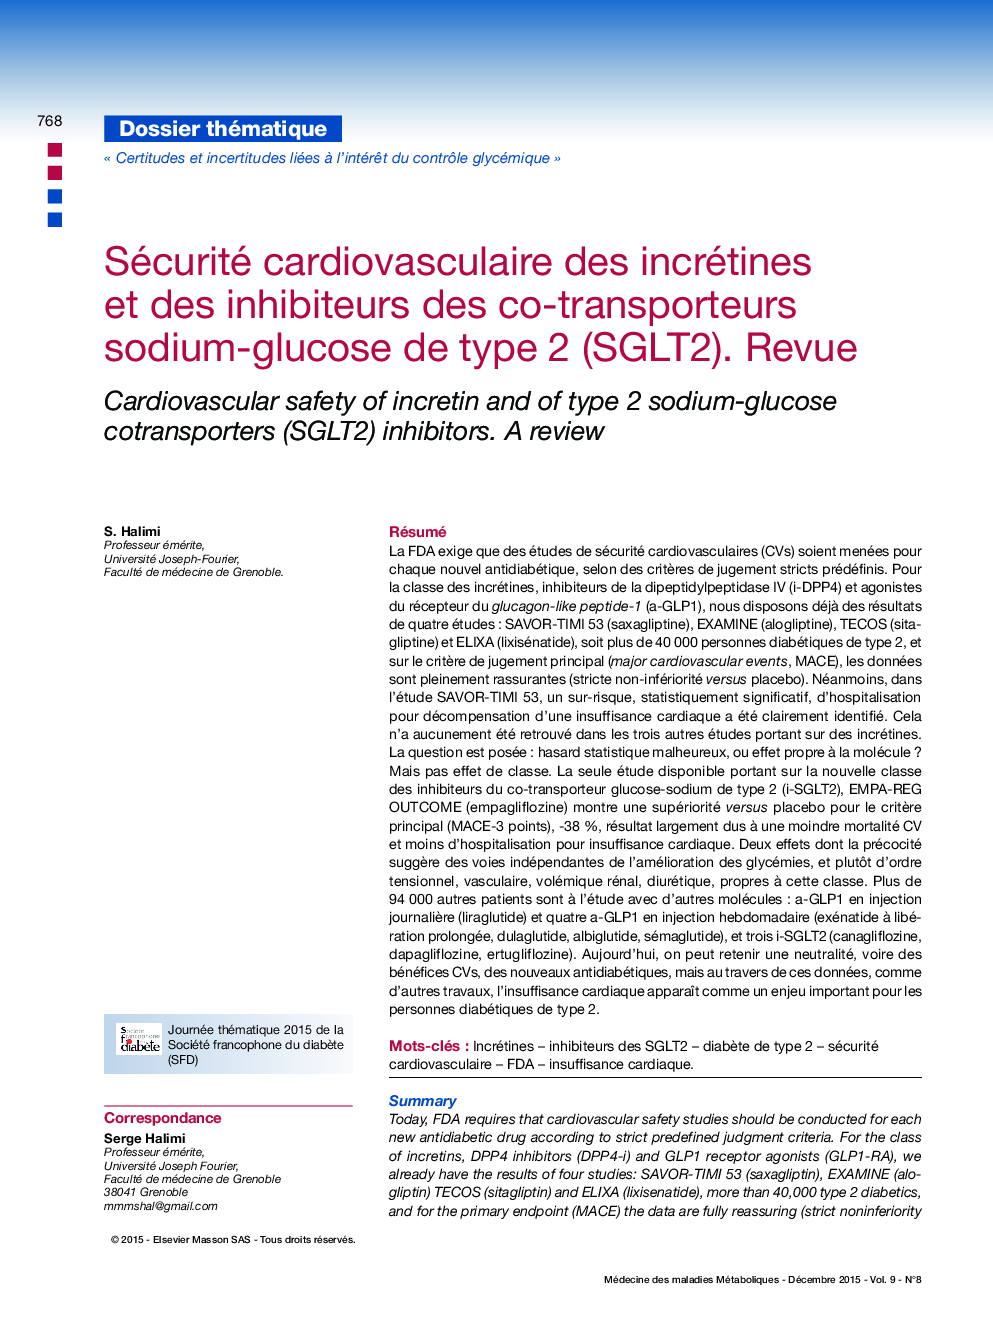 Sécurité cardiovasculaire des incrétines et des inhibiteurs des co-transporteurs sodium-glucose de type 2 (SGLT2). Revue